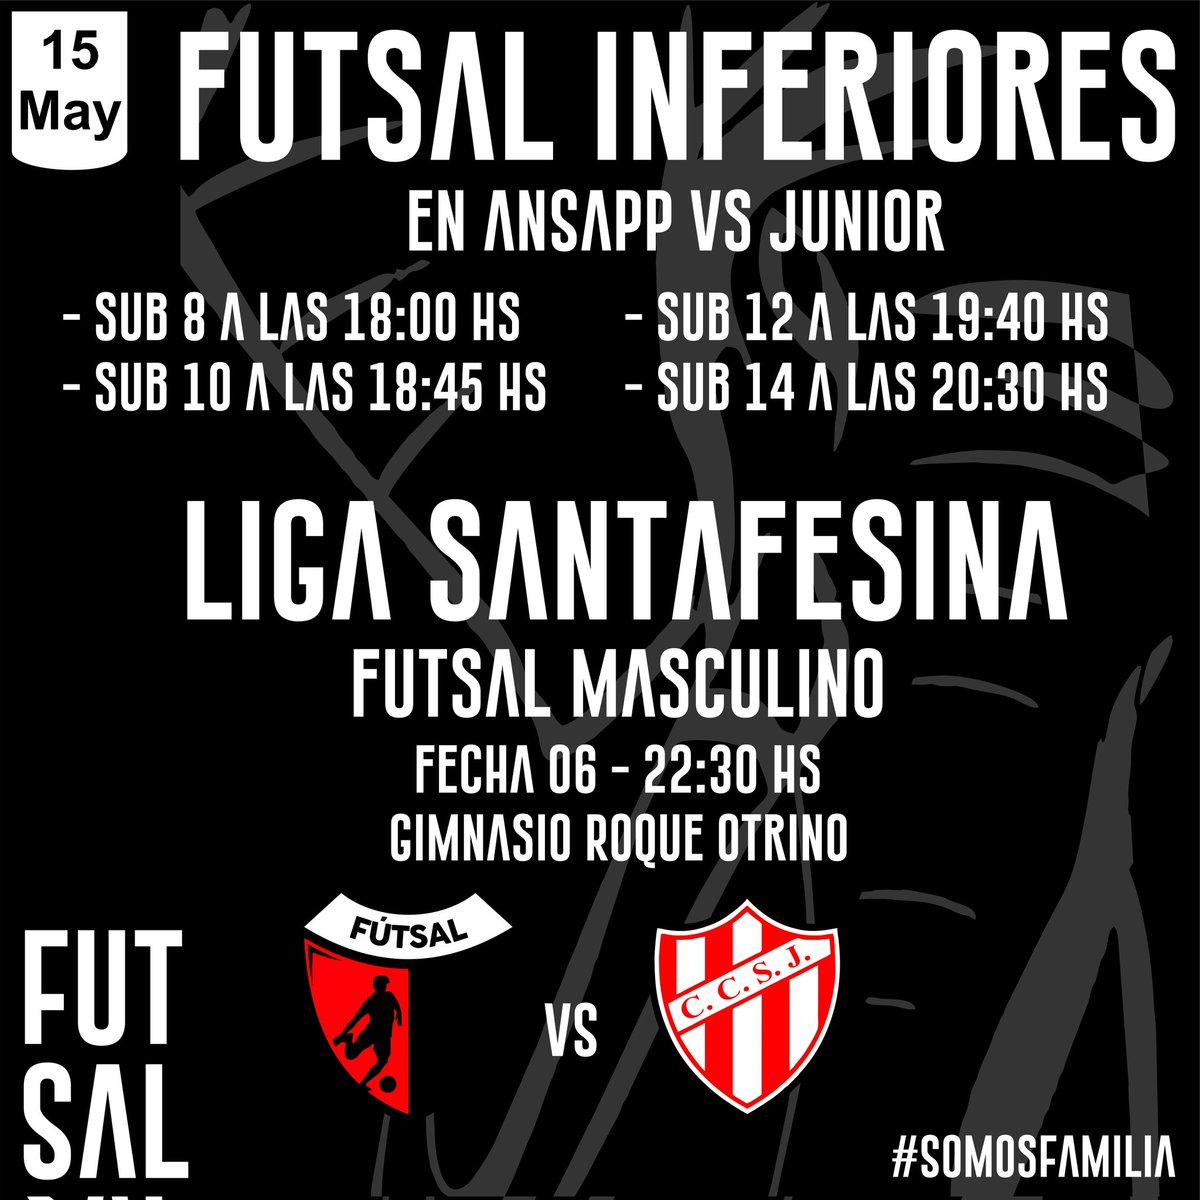 #Futsal Arranca la semana de los chicos de @ColonFutsal el día Miércoles.... #SomosFamilia @ColonOficial